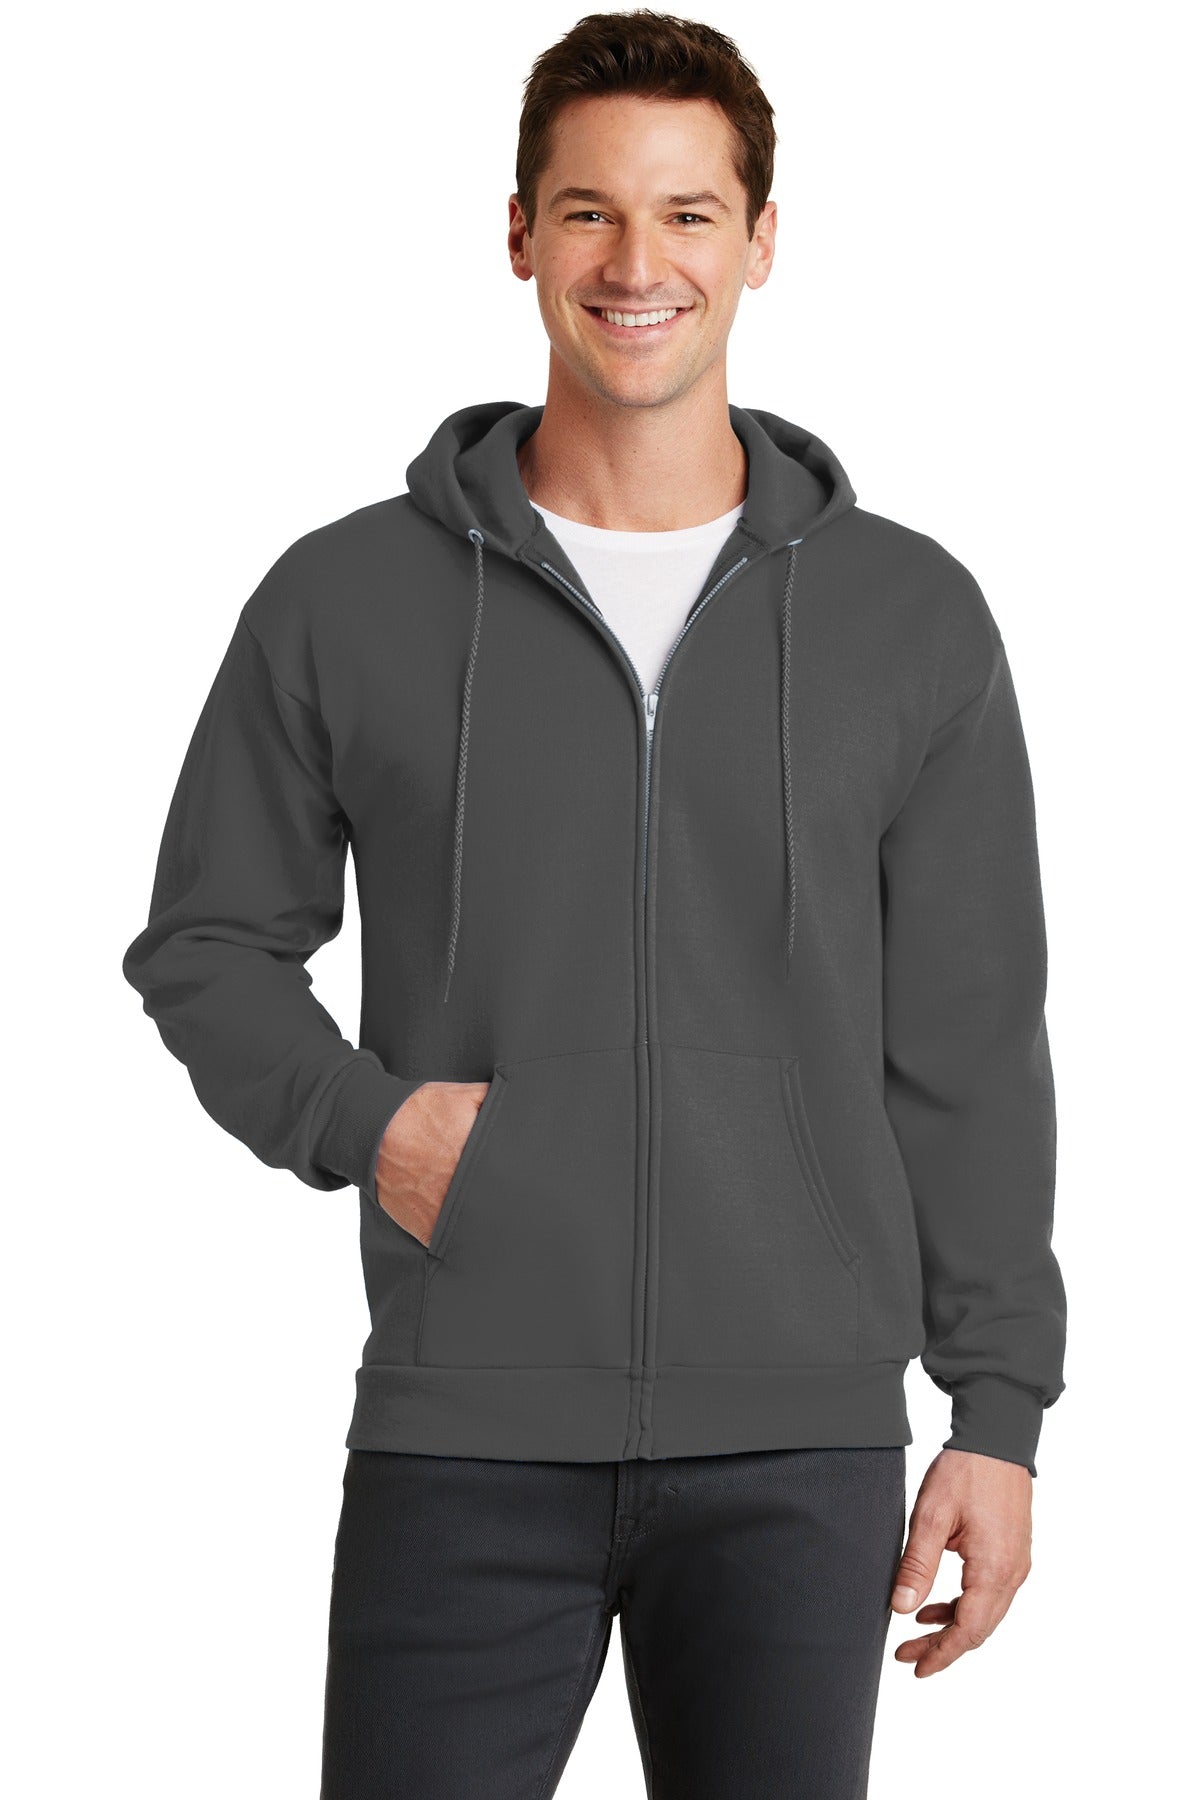 Sweatshirts/Fleece Charcoal Port & Company